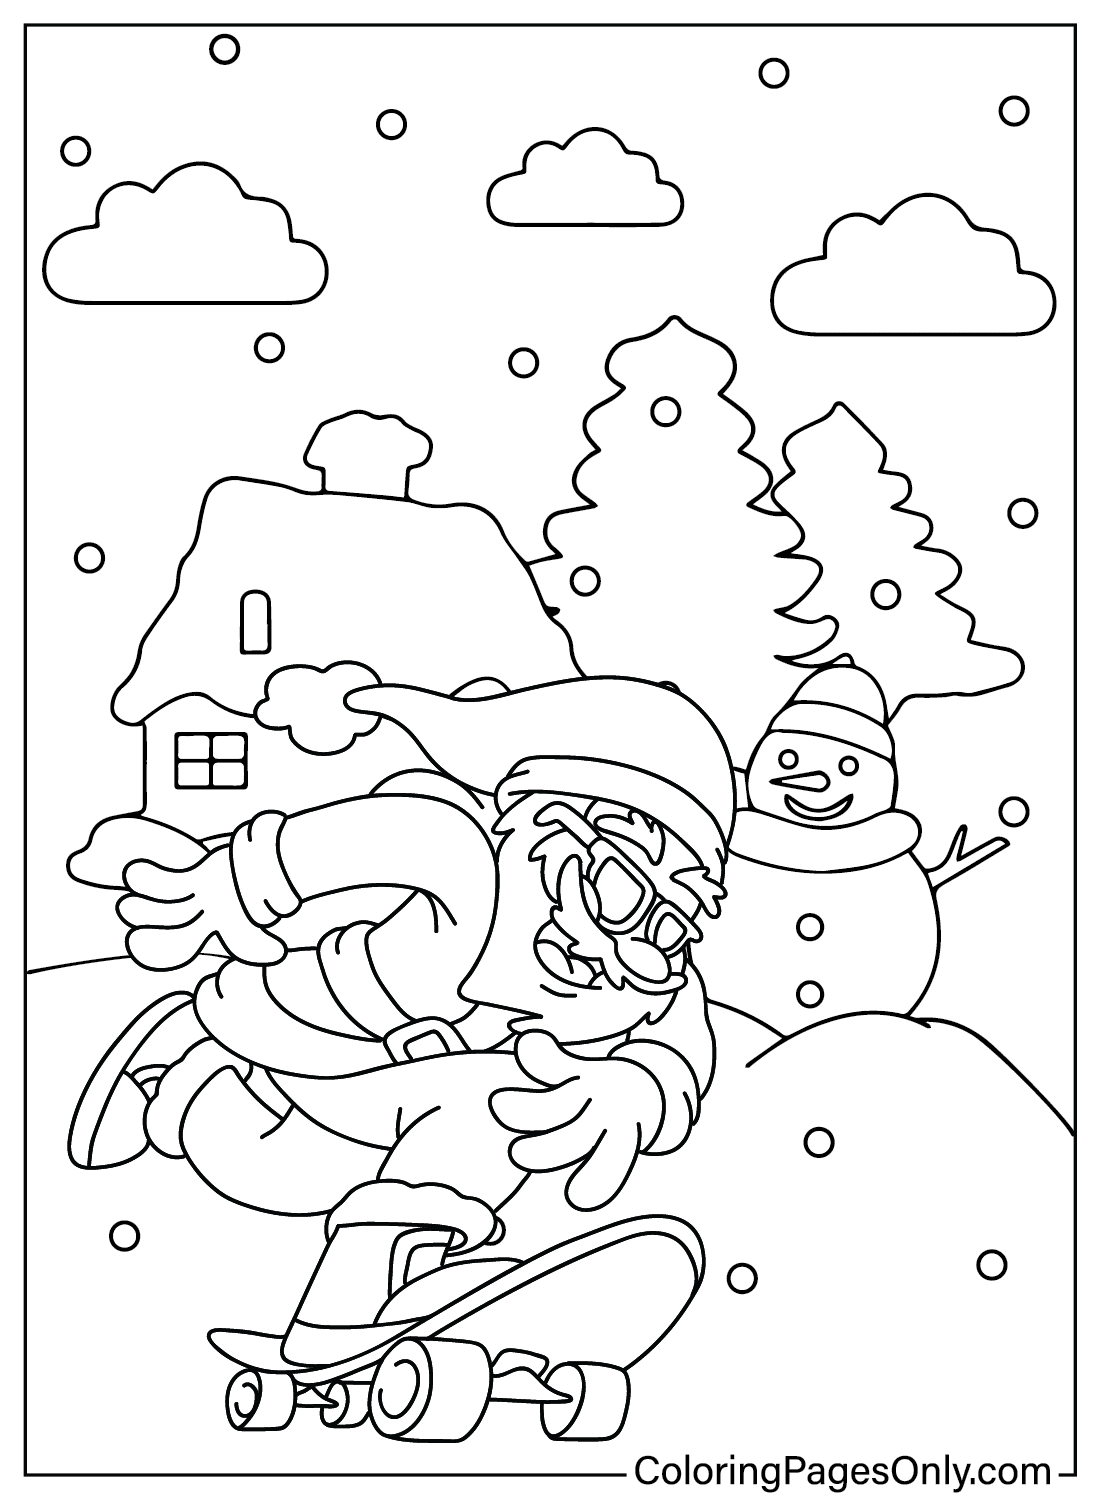 Santa Claus Coloring Sheet from Santa Claus